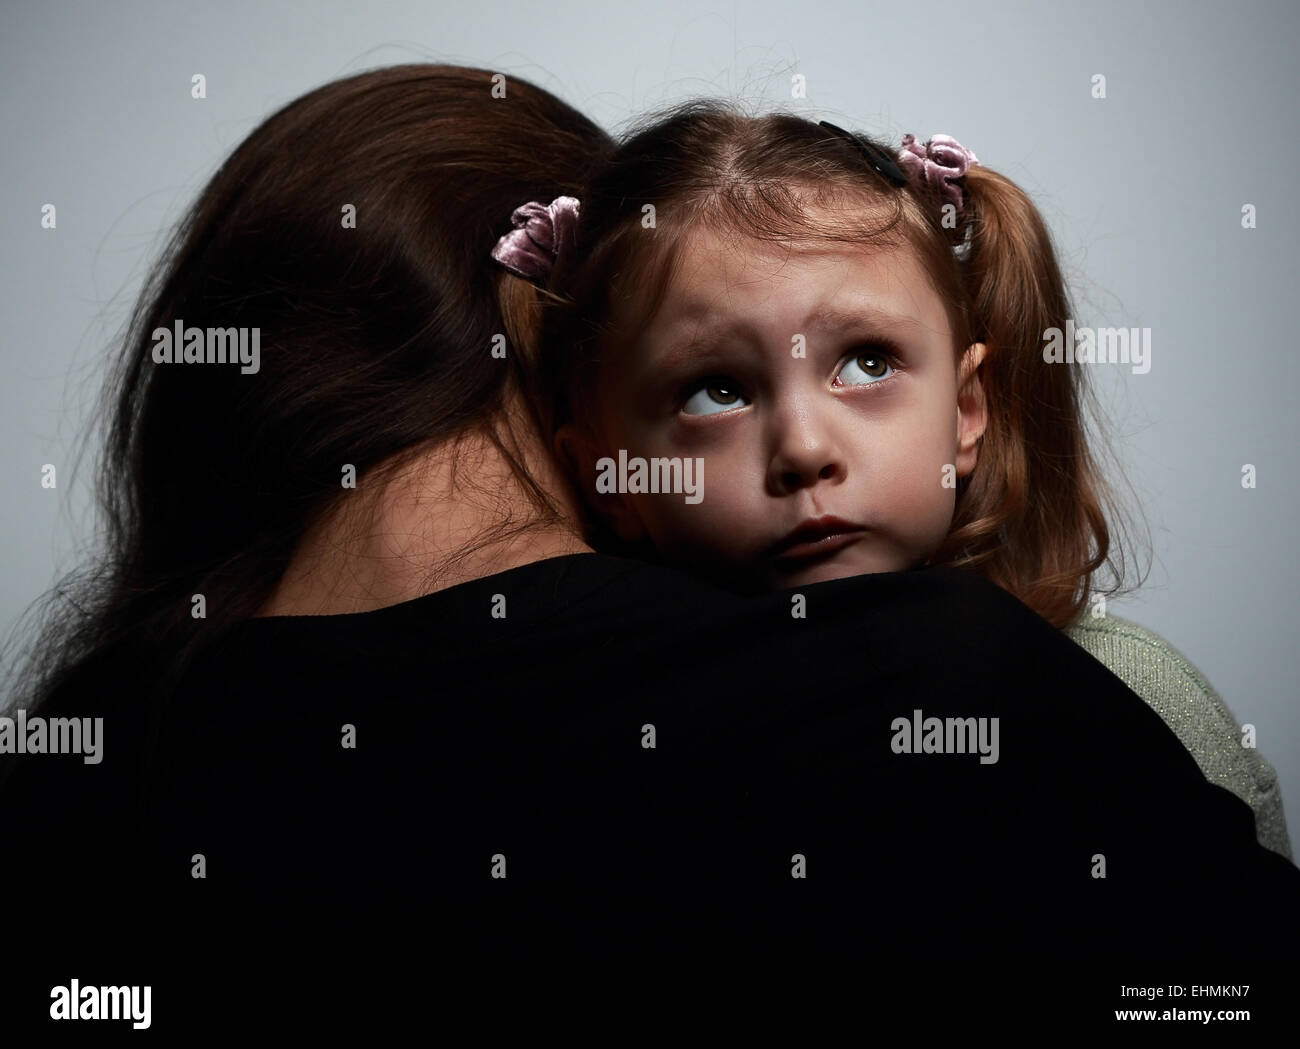 Madre Mirando A La Hija Fotos E Imágenes De Stock Alamy 